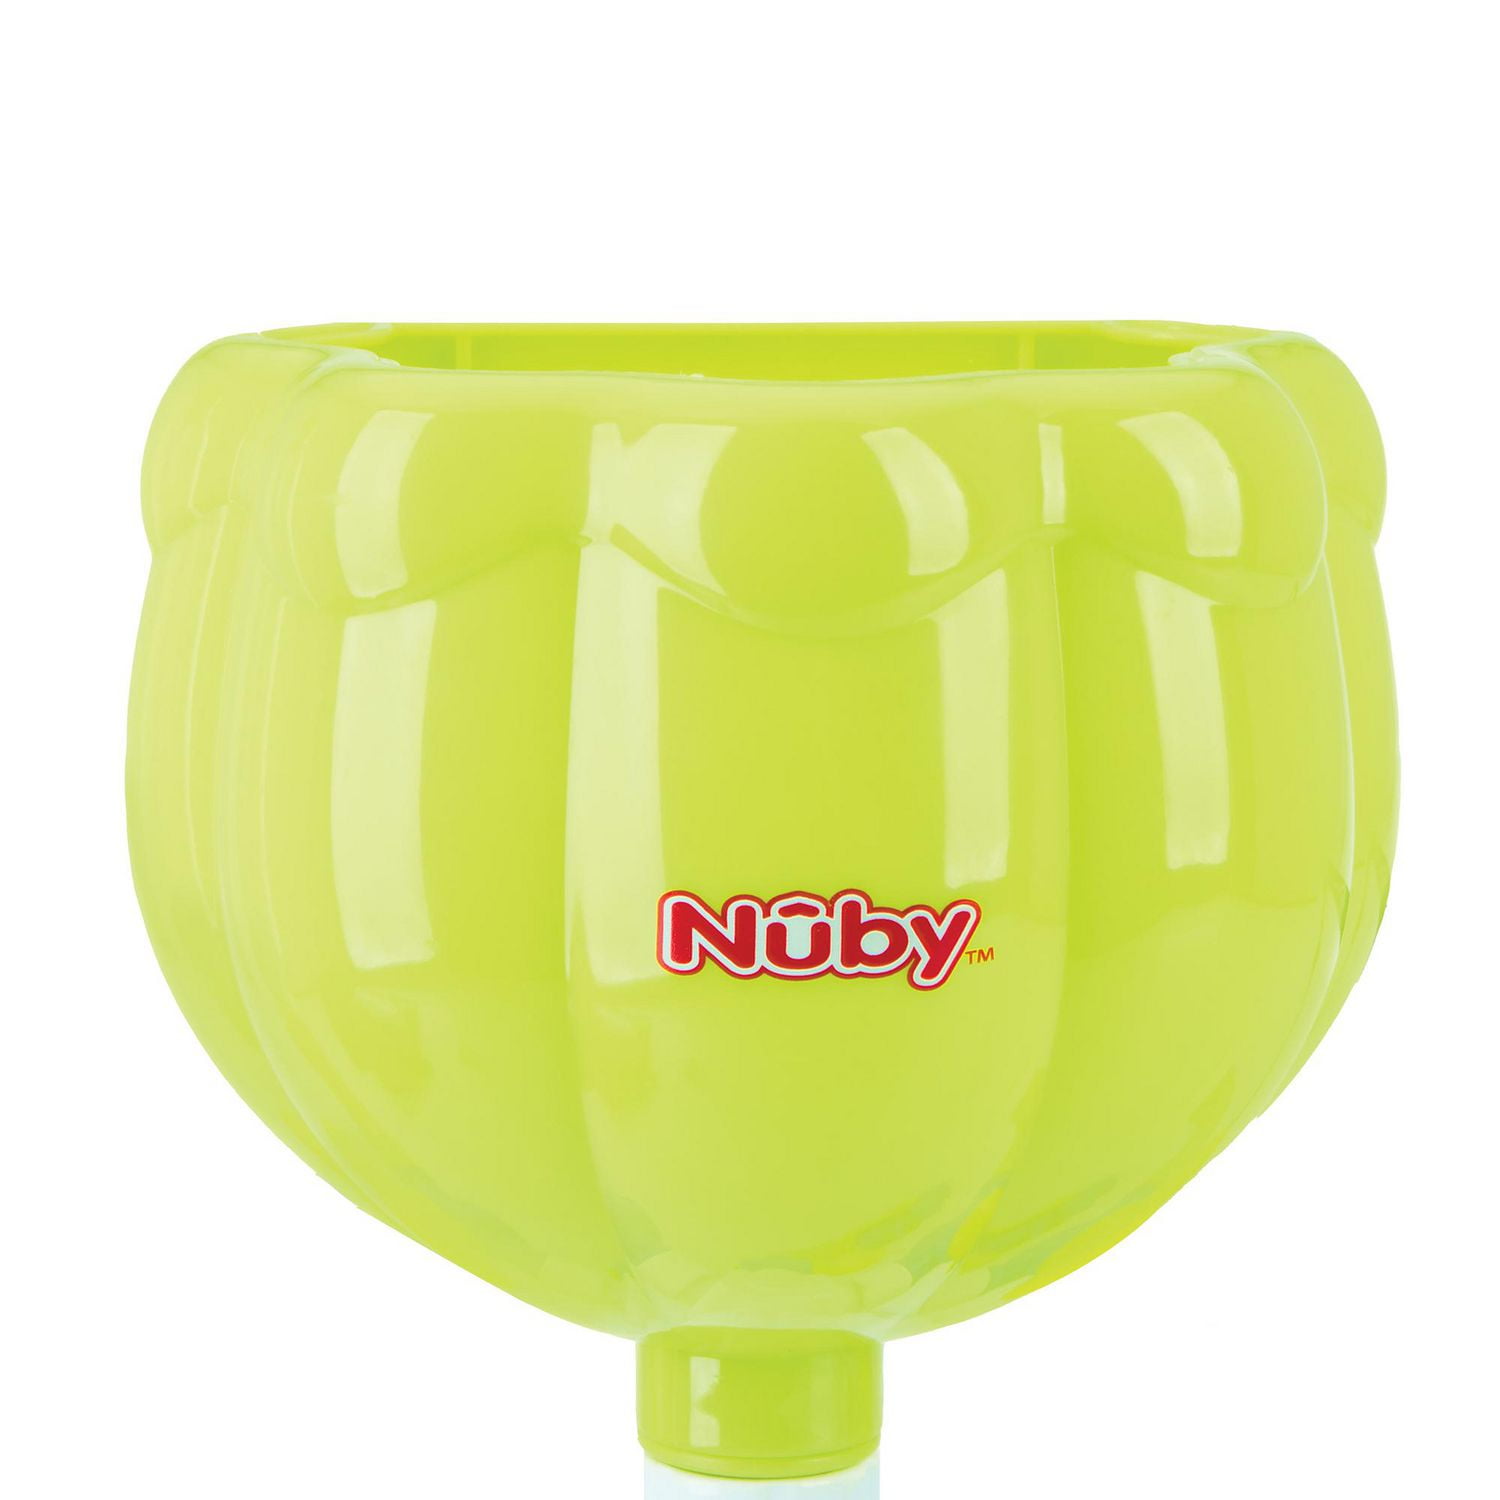 Nuby Splash N' Catch Fishing Set Bath Toy, Multi, 5 Count : :  Toys & Games